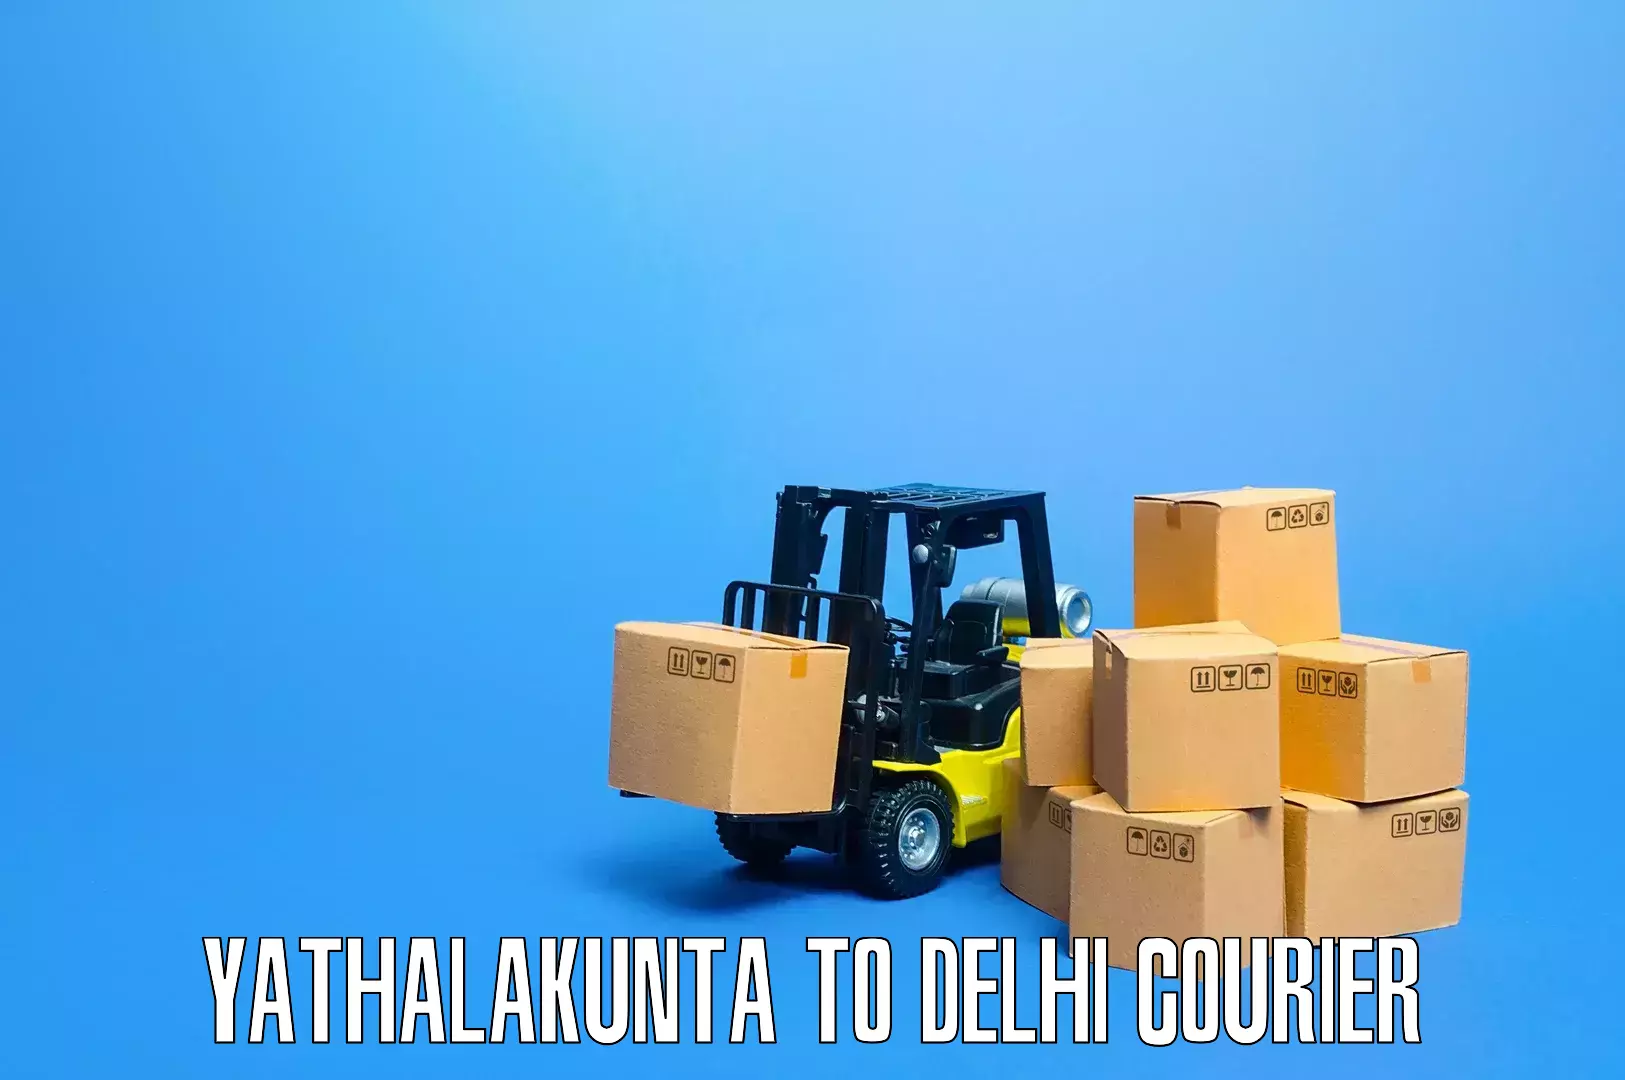 Quality furniture shipping Yathalakunta to Krishna Nagar